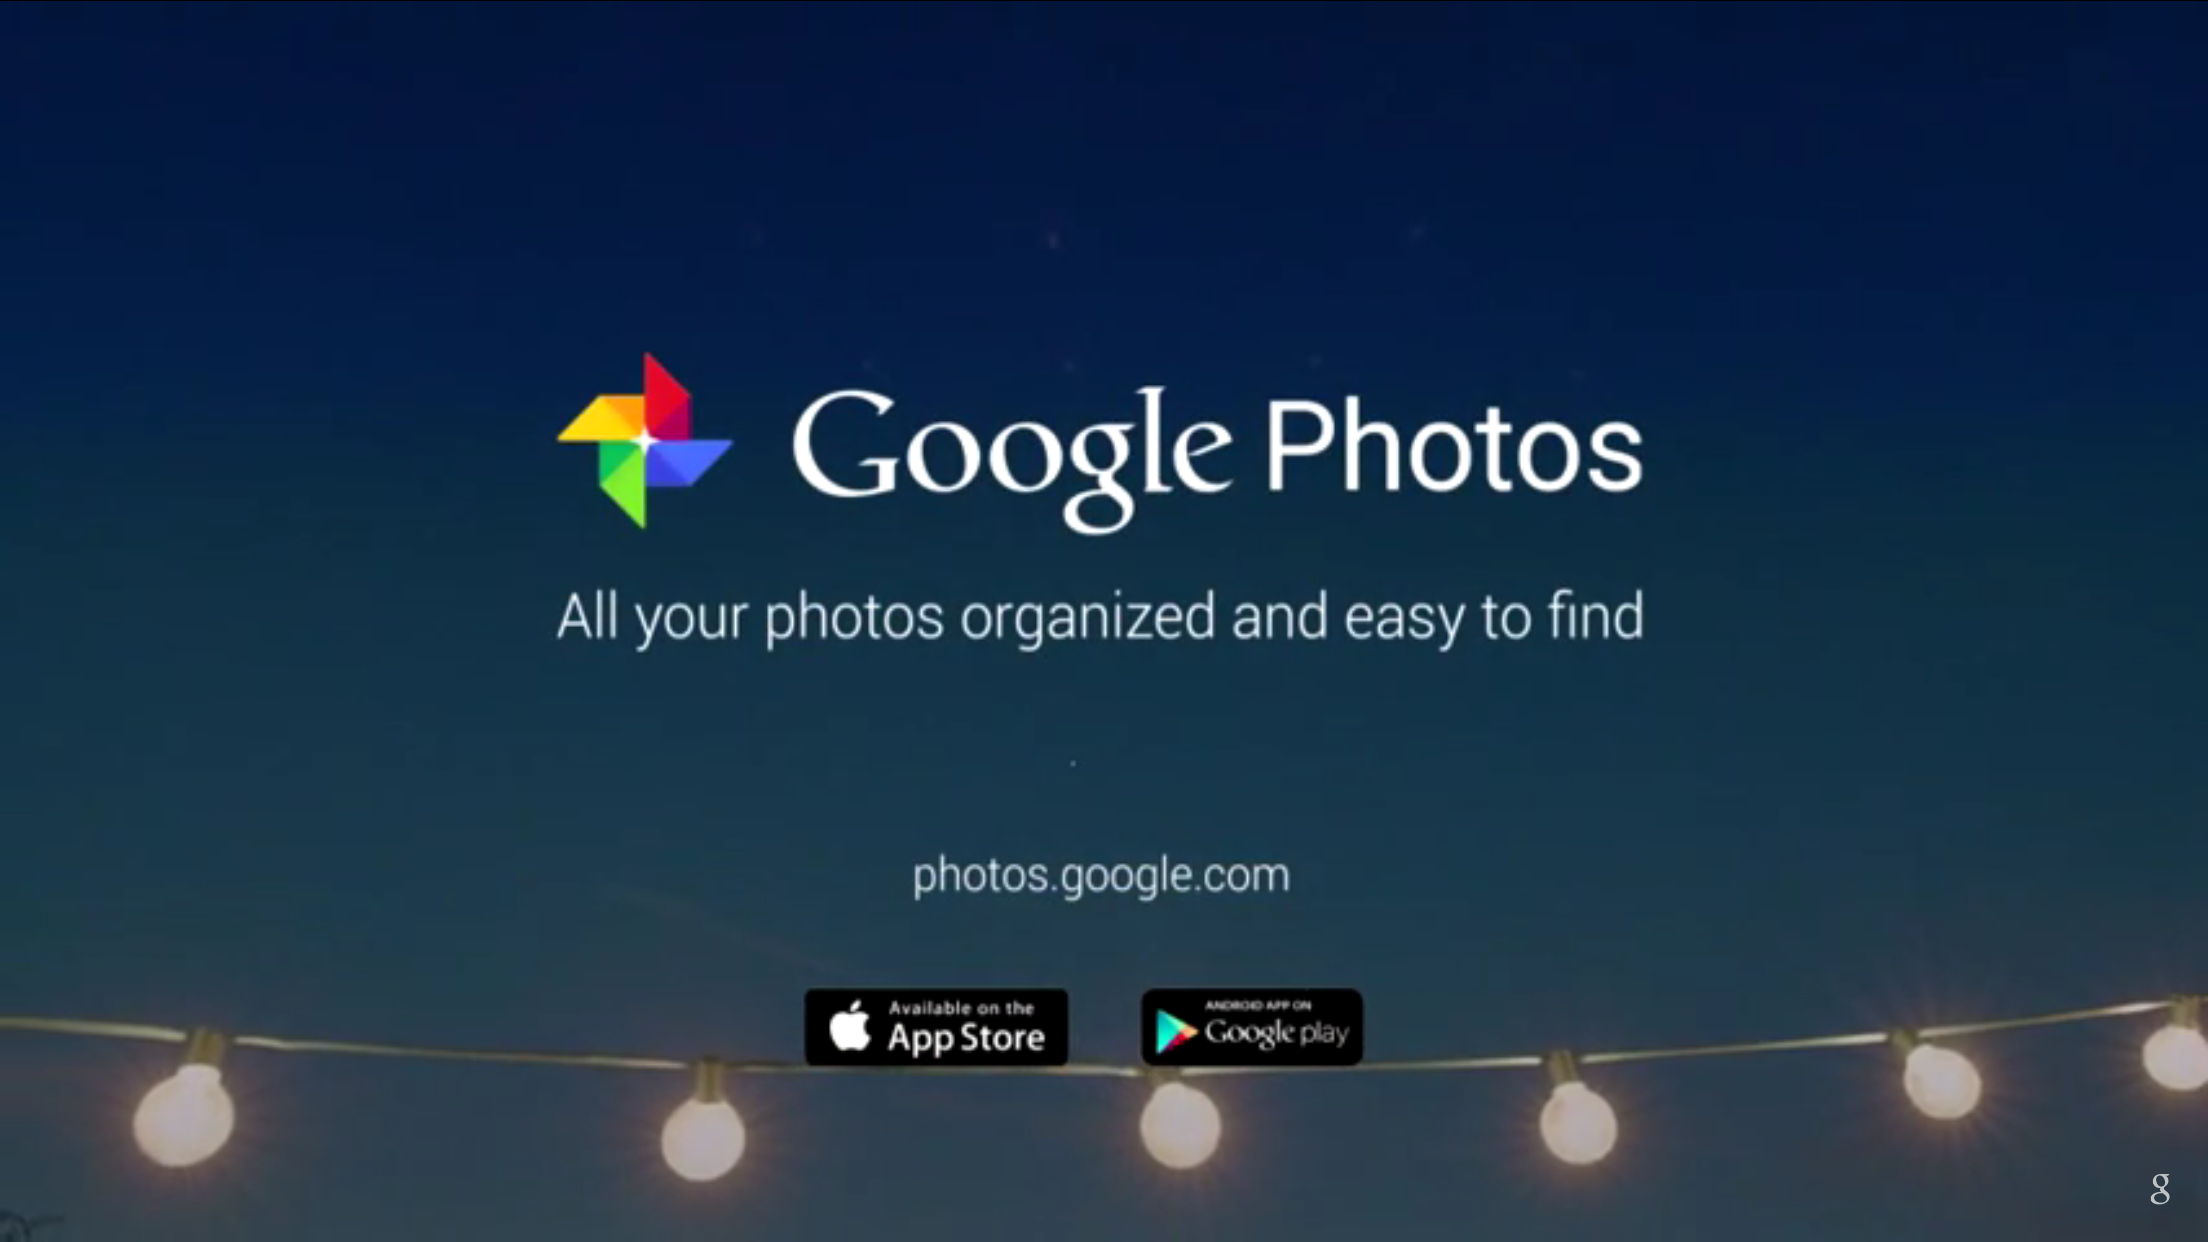 Photos.Google.com